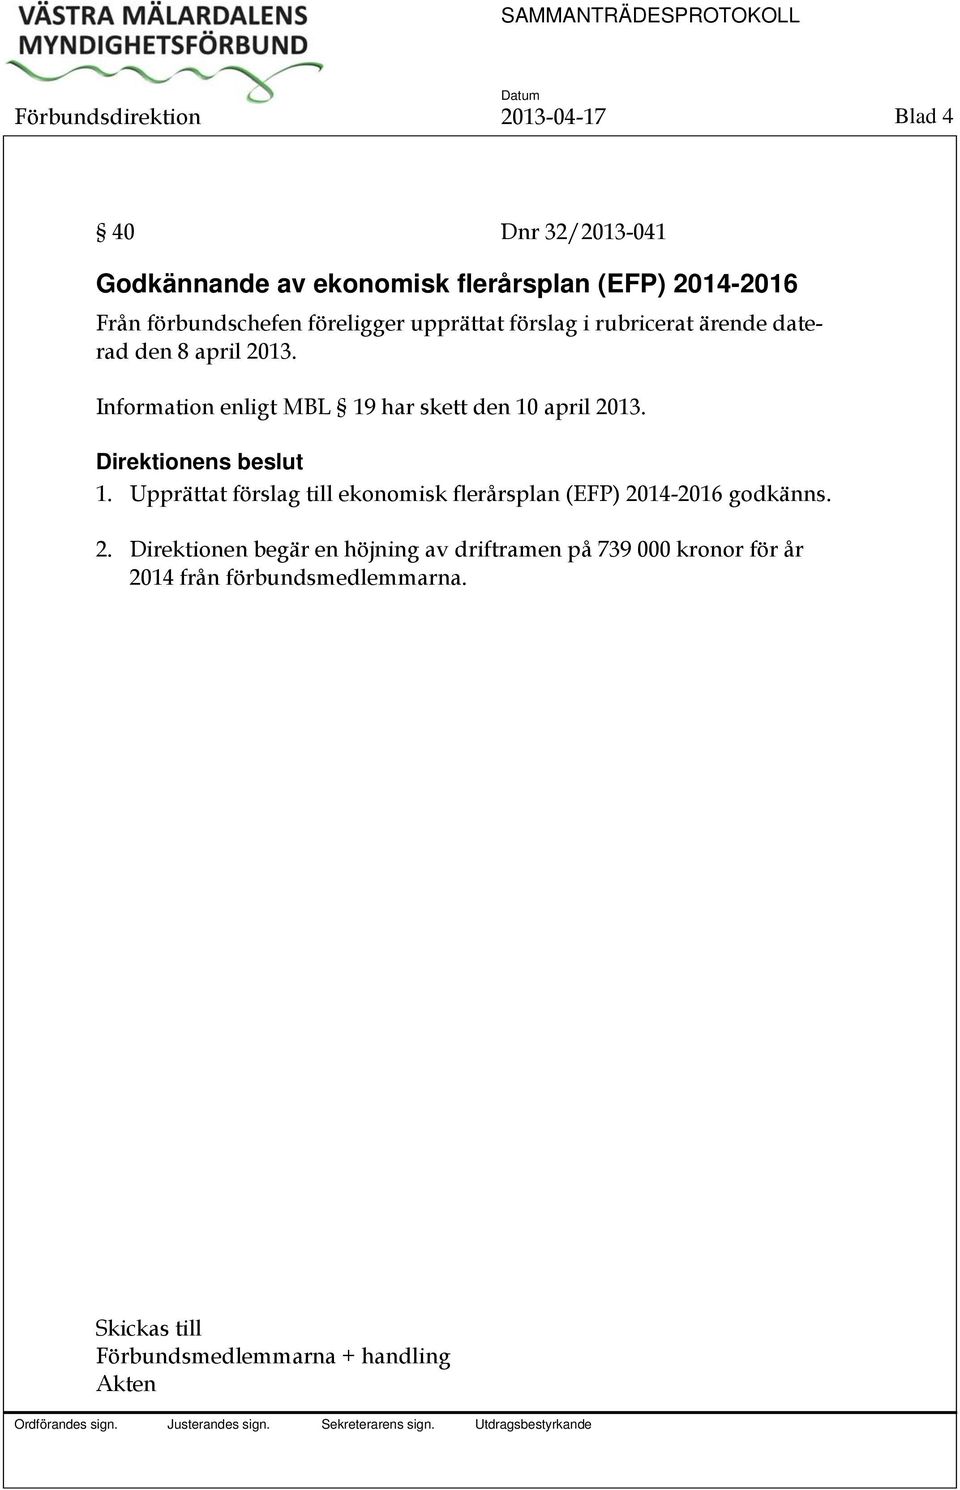 Information enligt MBL 19 har skett den 10 april 2013. 1. Upprättat förslag till ekonomisk flerårsplan (EFP) 2014-2016 godkänns.